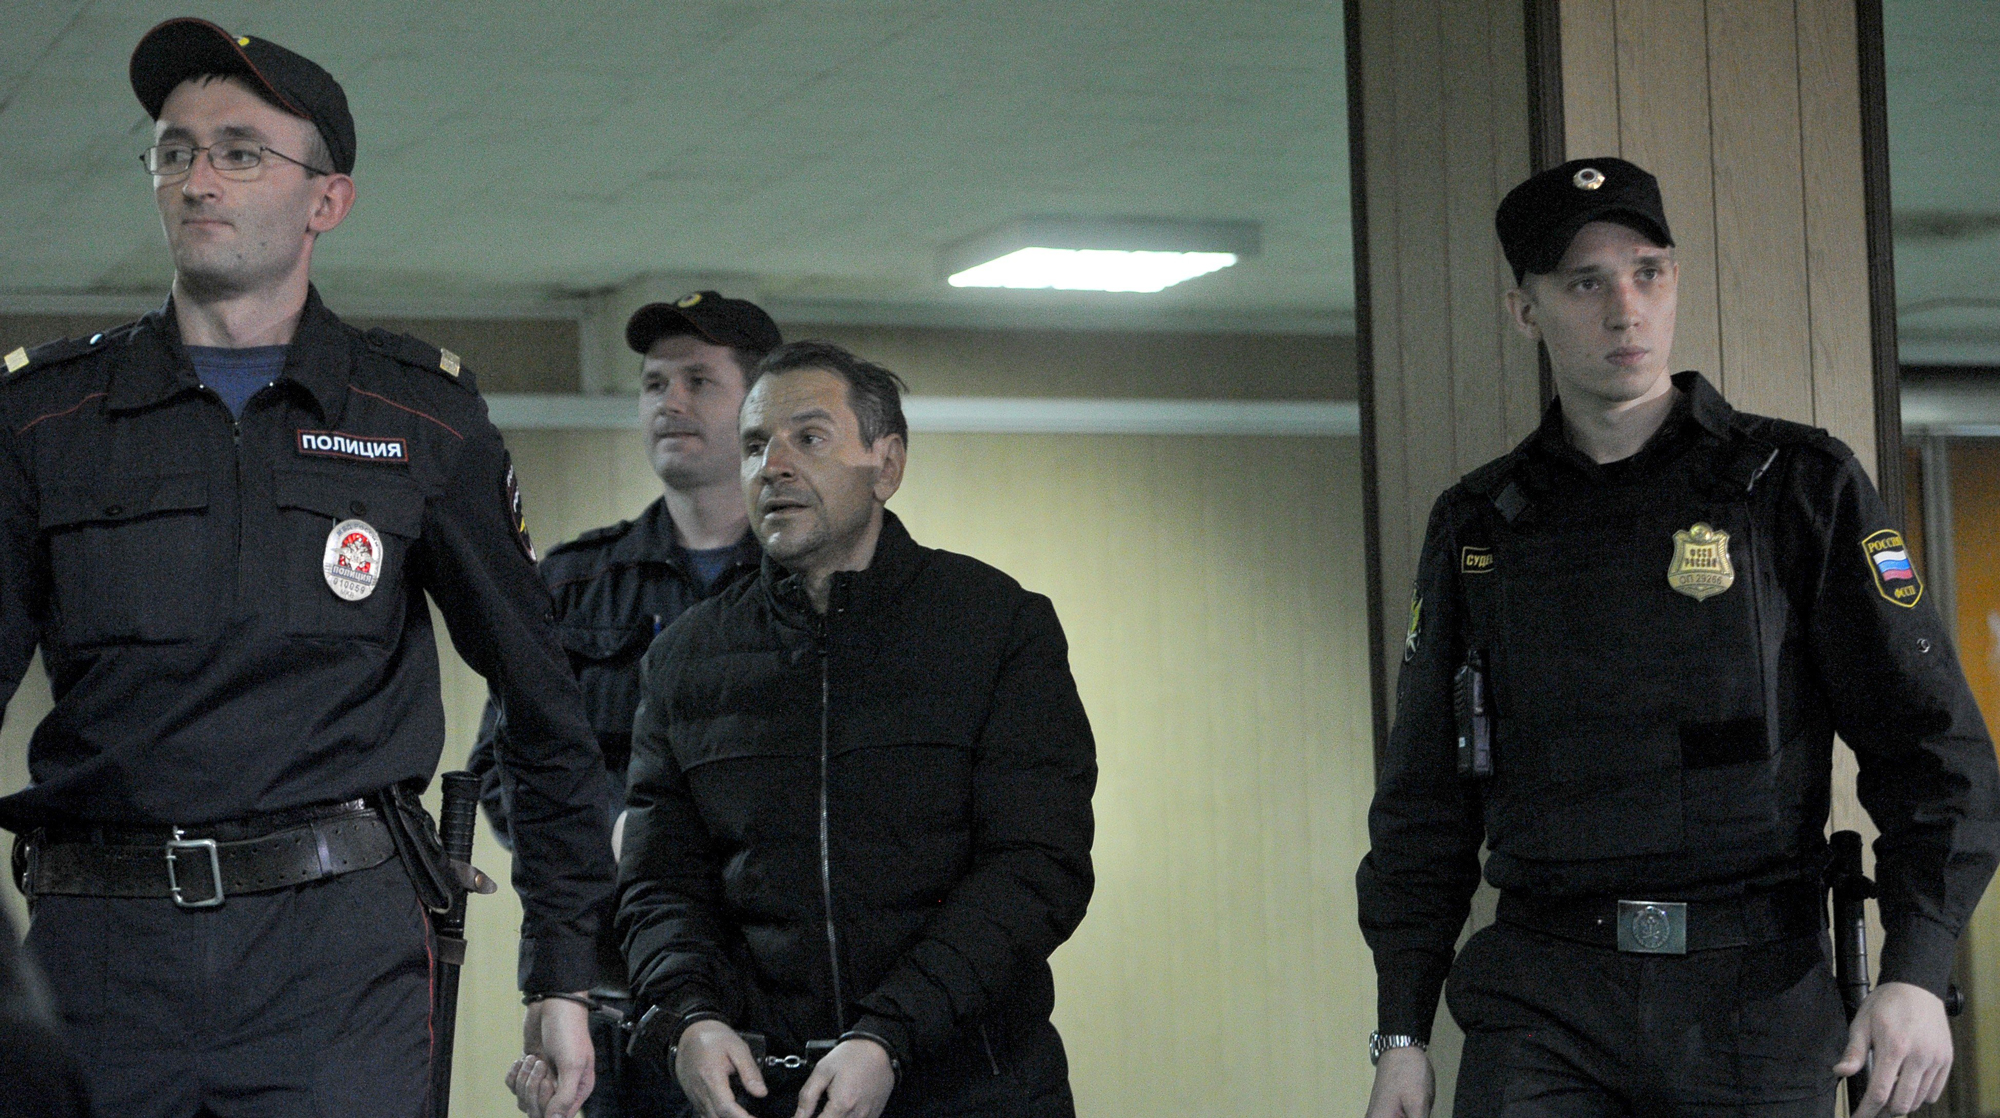 О возможных мотивах нападения на журналистку рассказал ее адвокат Фото: © Агентство Москва/Любимов Андрей